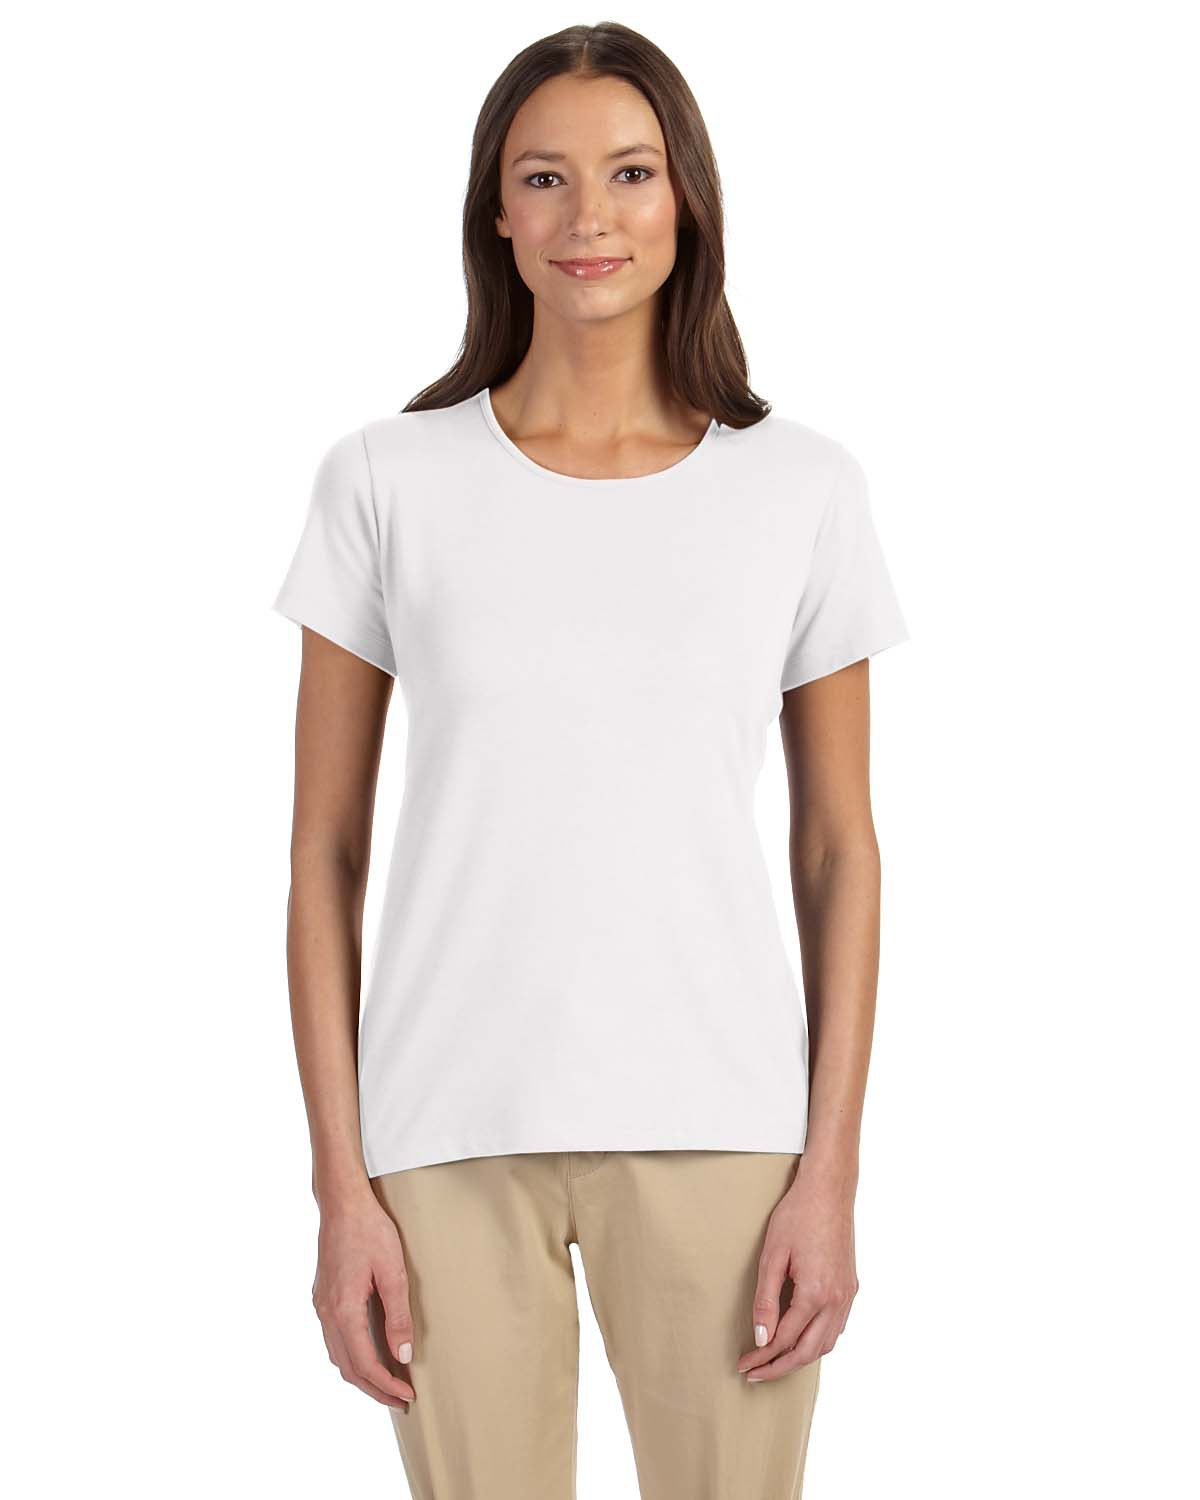 'Devon & Jones DP182W Ladies Perfect Fit Shell T-Shirt'